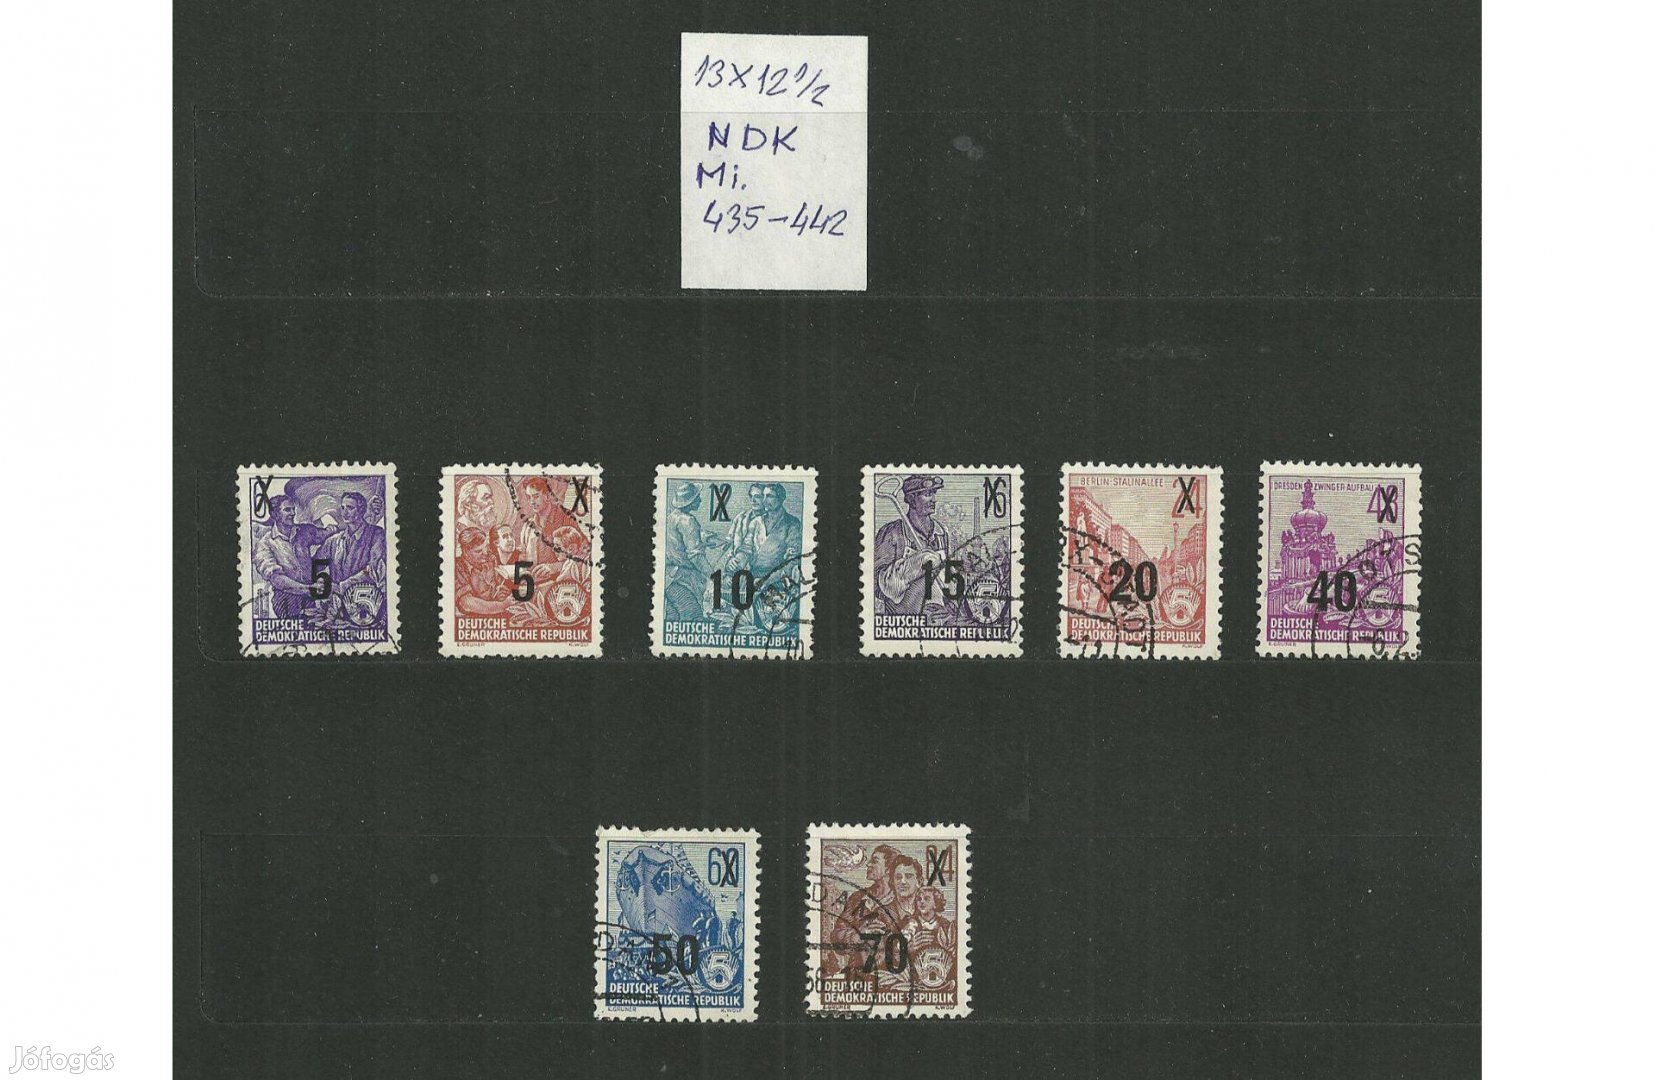 NDK bélyegek (1954 évi felűlnyomás)